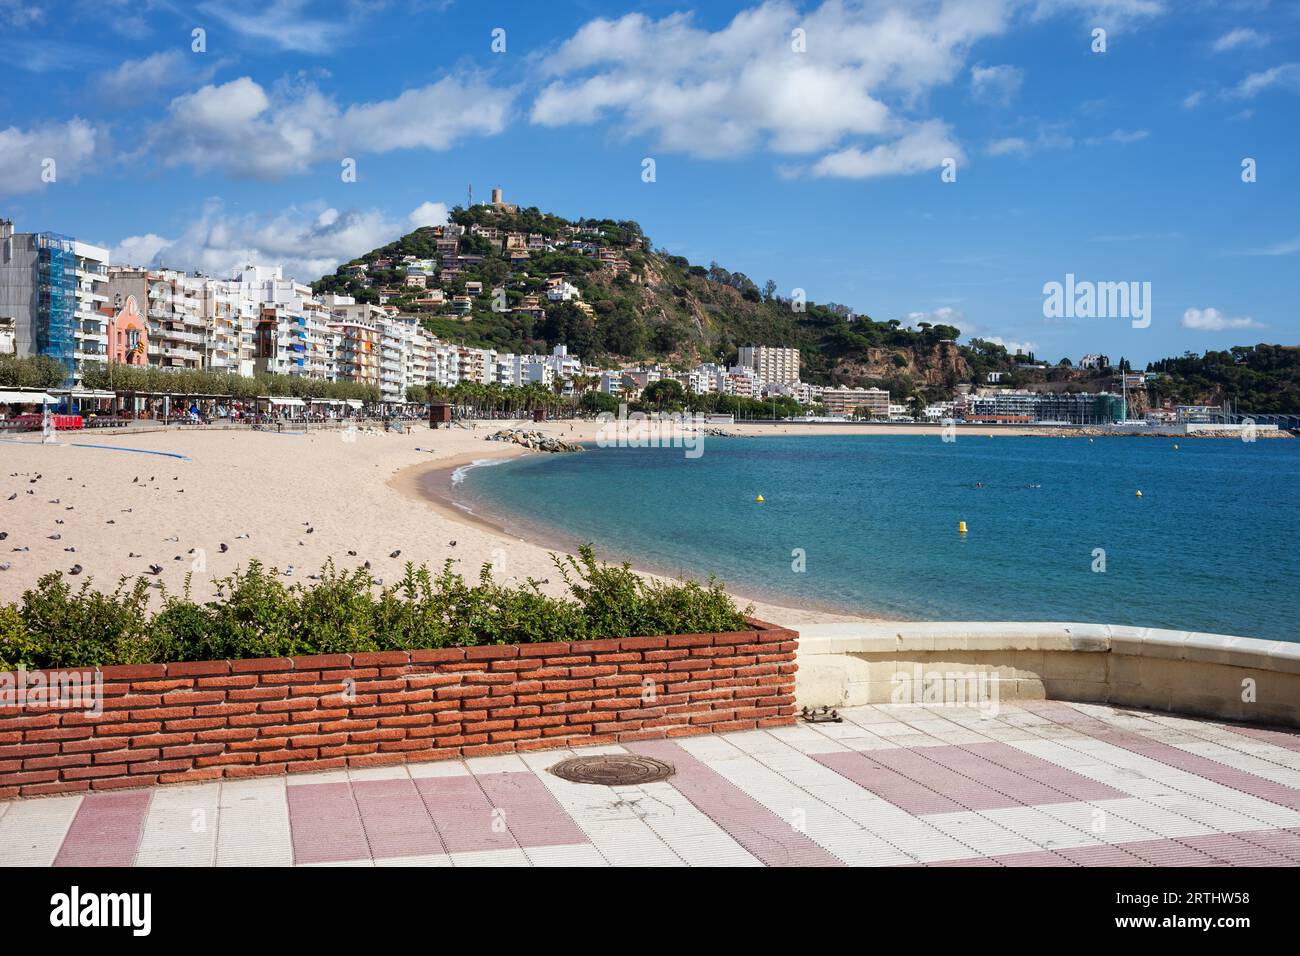 Blanes cittadina sulla Costa Brava in Spagna, in Catalogna, in vista della spiaggia dalla passeggiata a mare mediterraneo Foto Stock